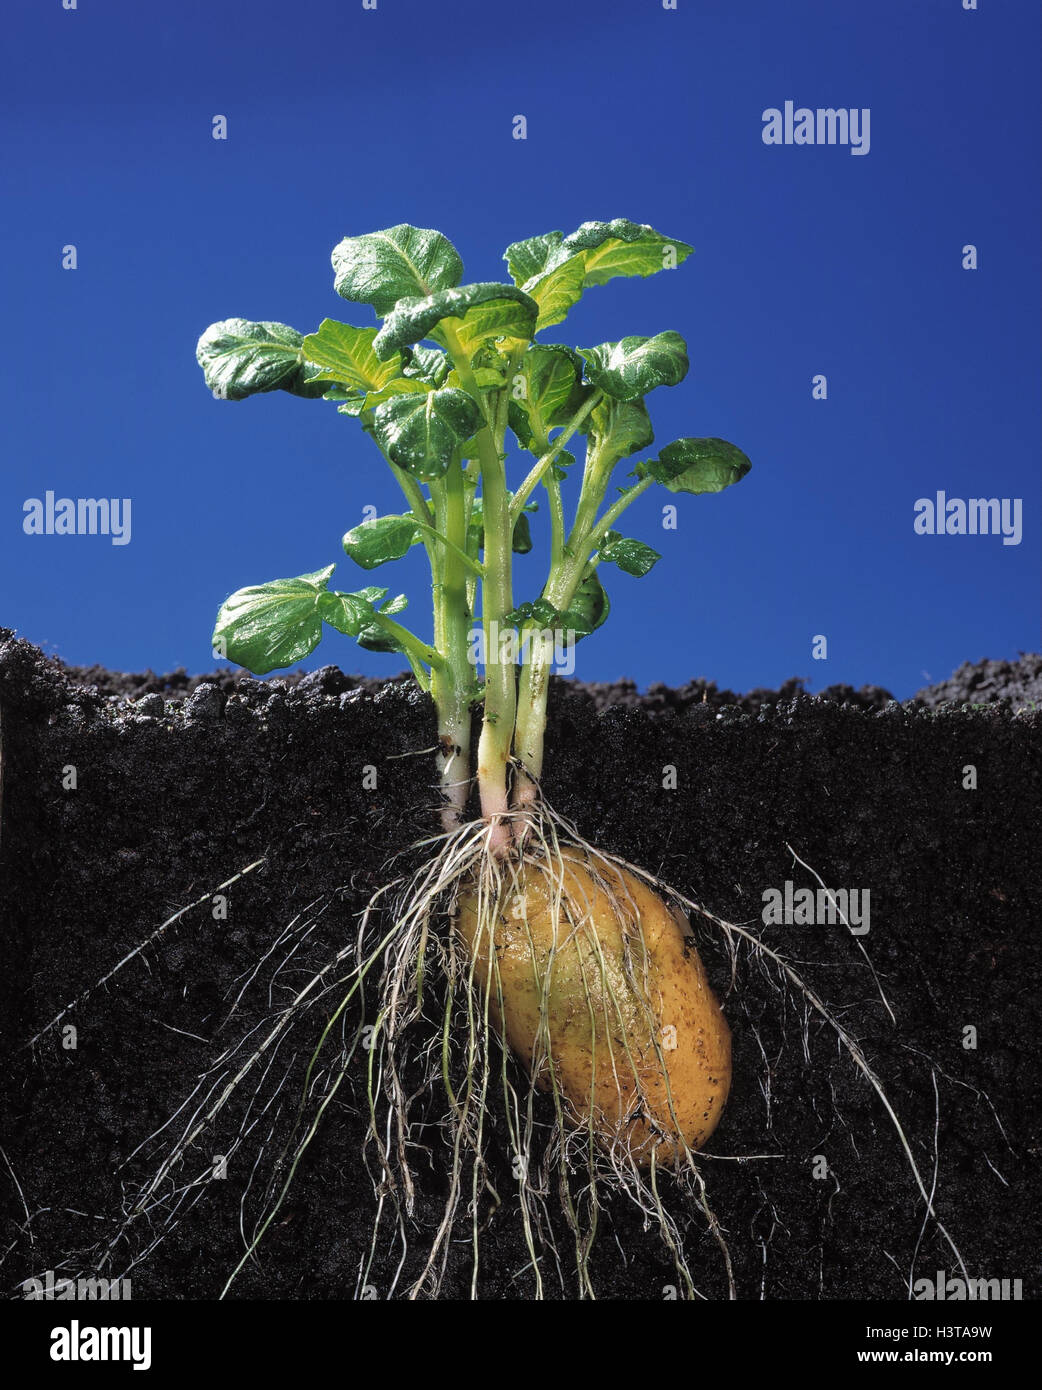 Pianta di patata, pavimento sezione trasversale, massa, pavimento, patate, piante, radici, carboidrati, amido Foto Stock